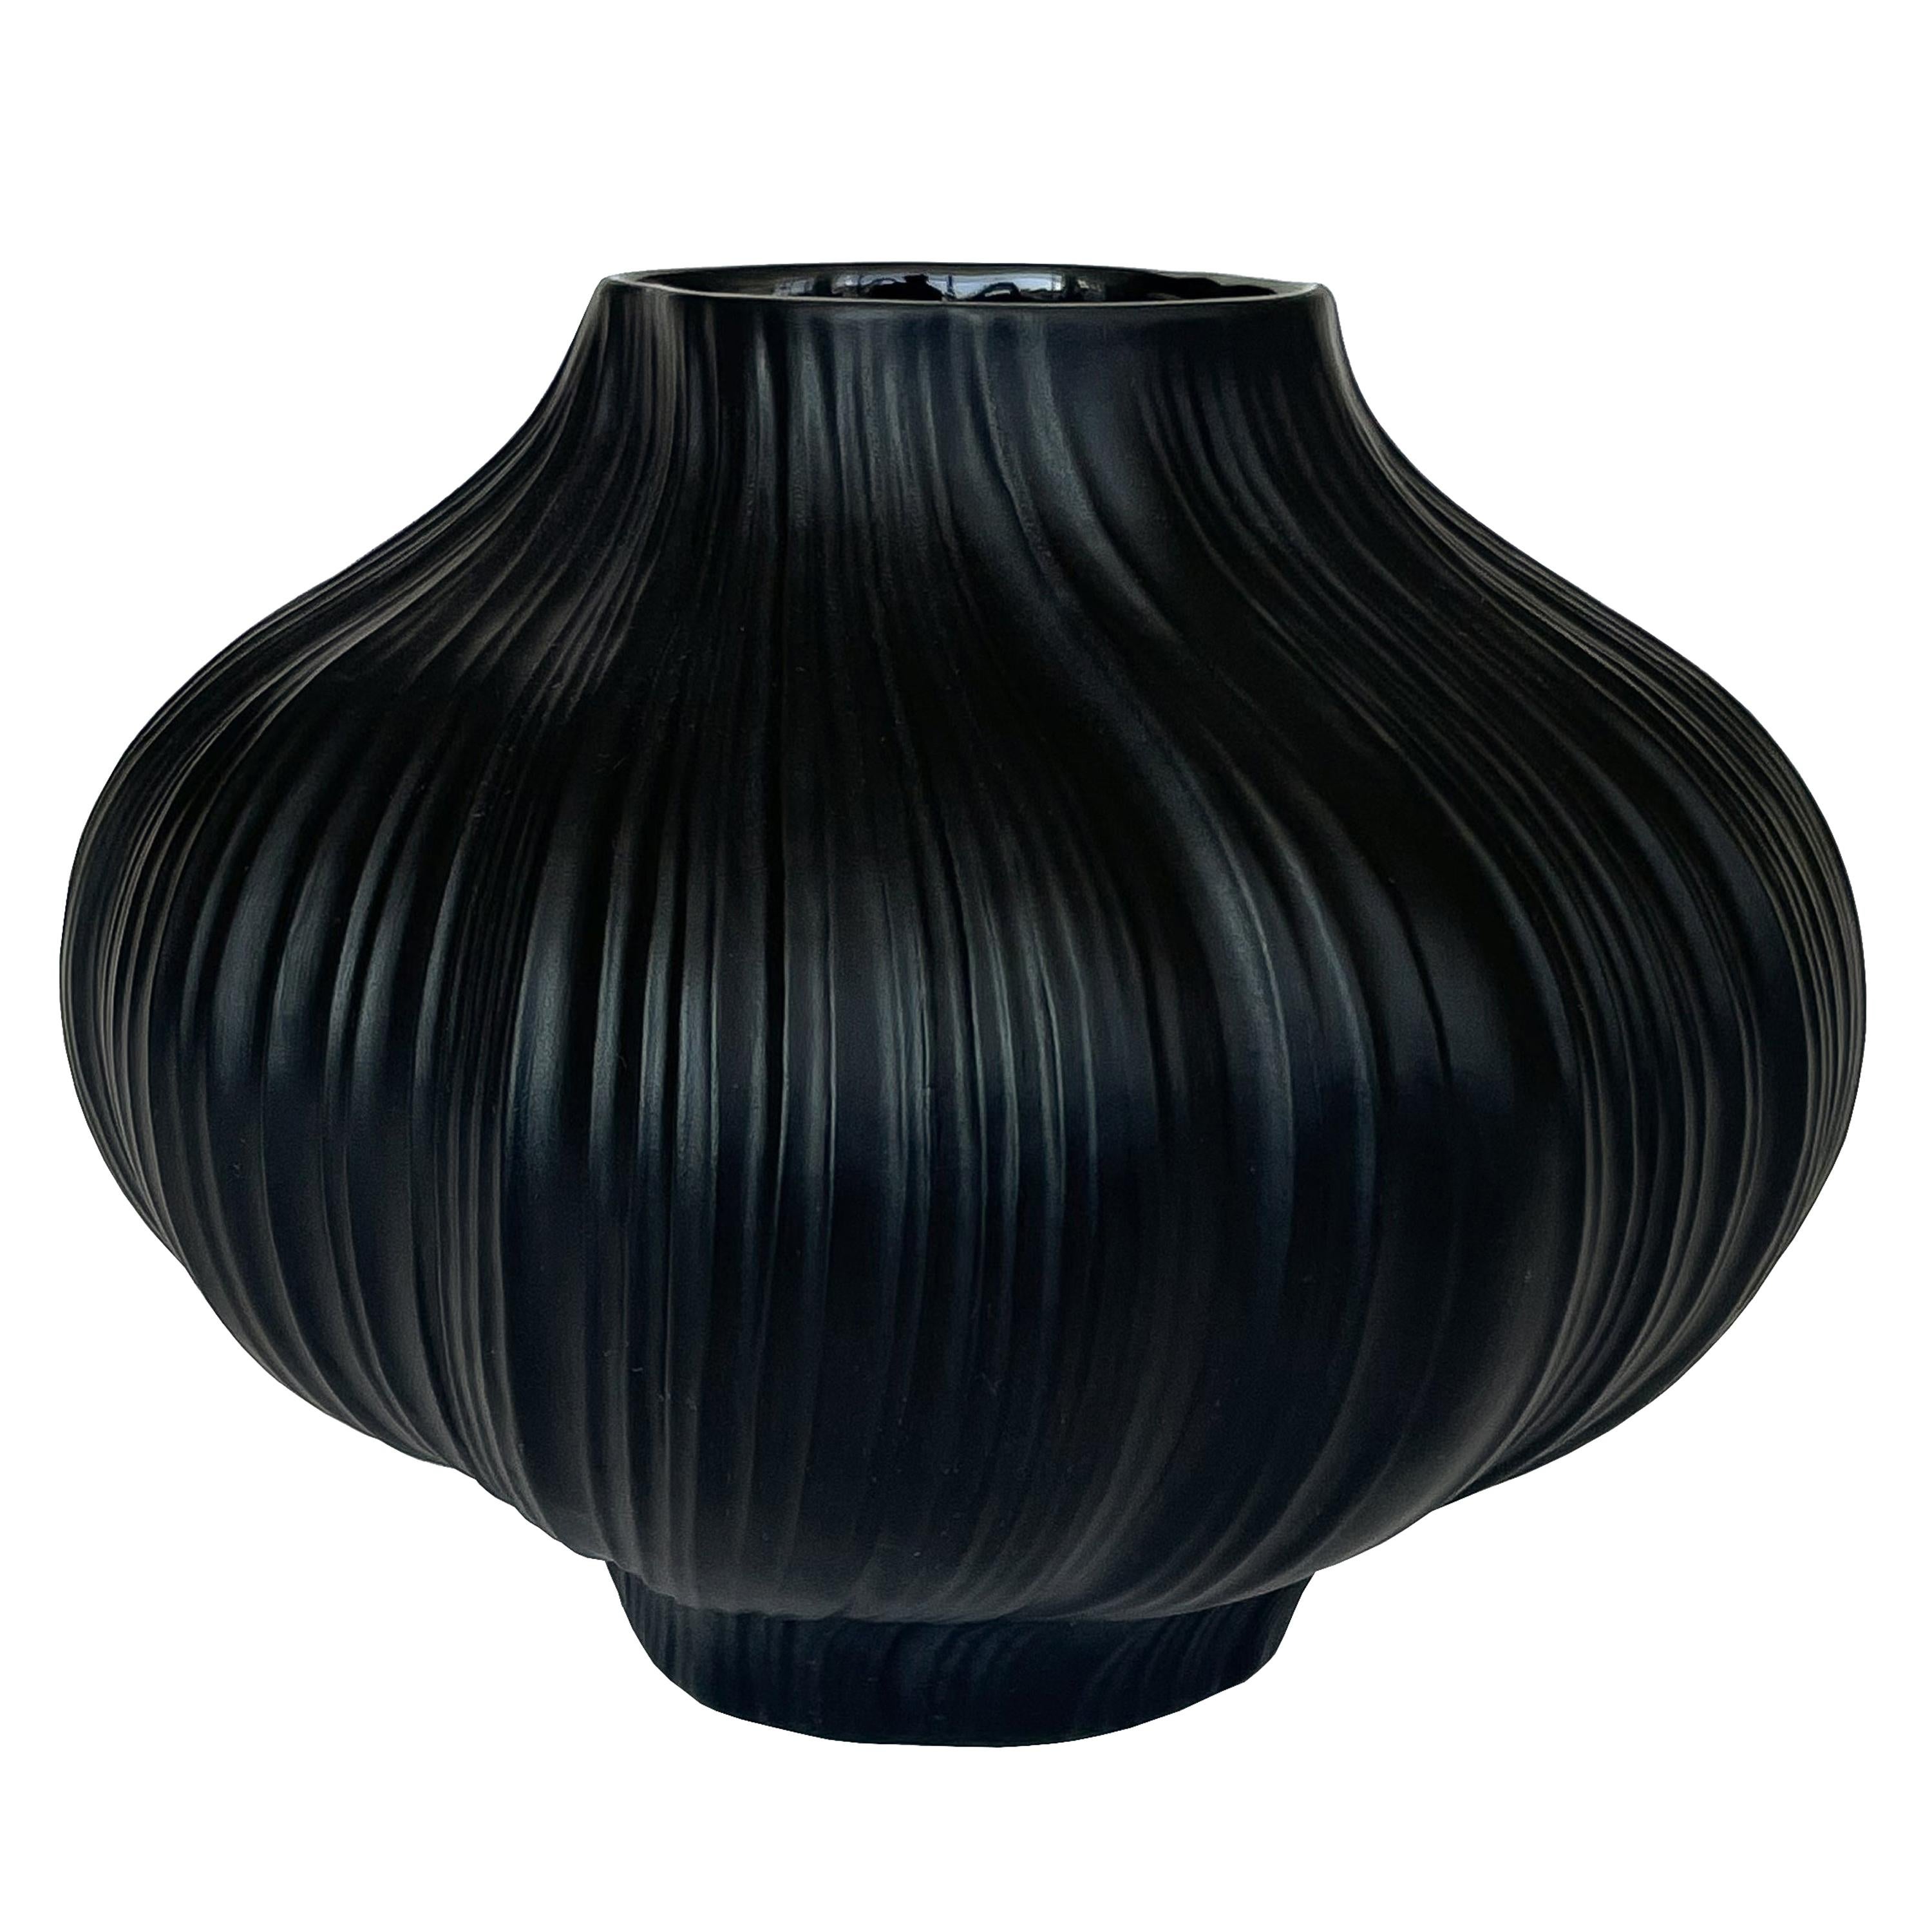 Martin Freyer Black Unglazed Porcelain Plissee Vase for Rosenthal